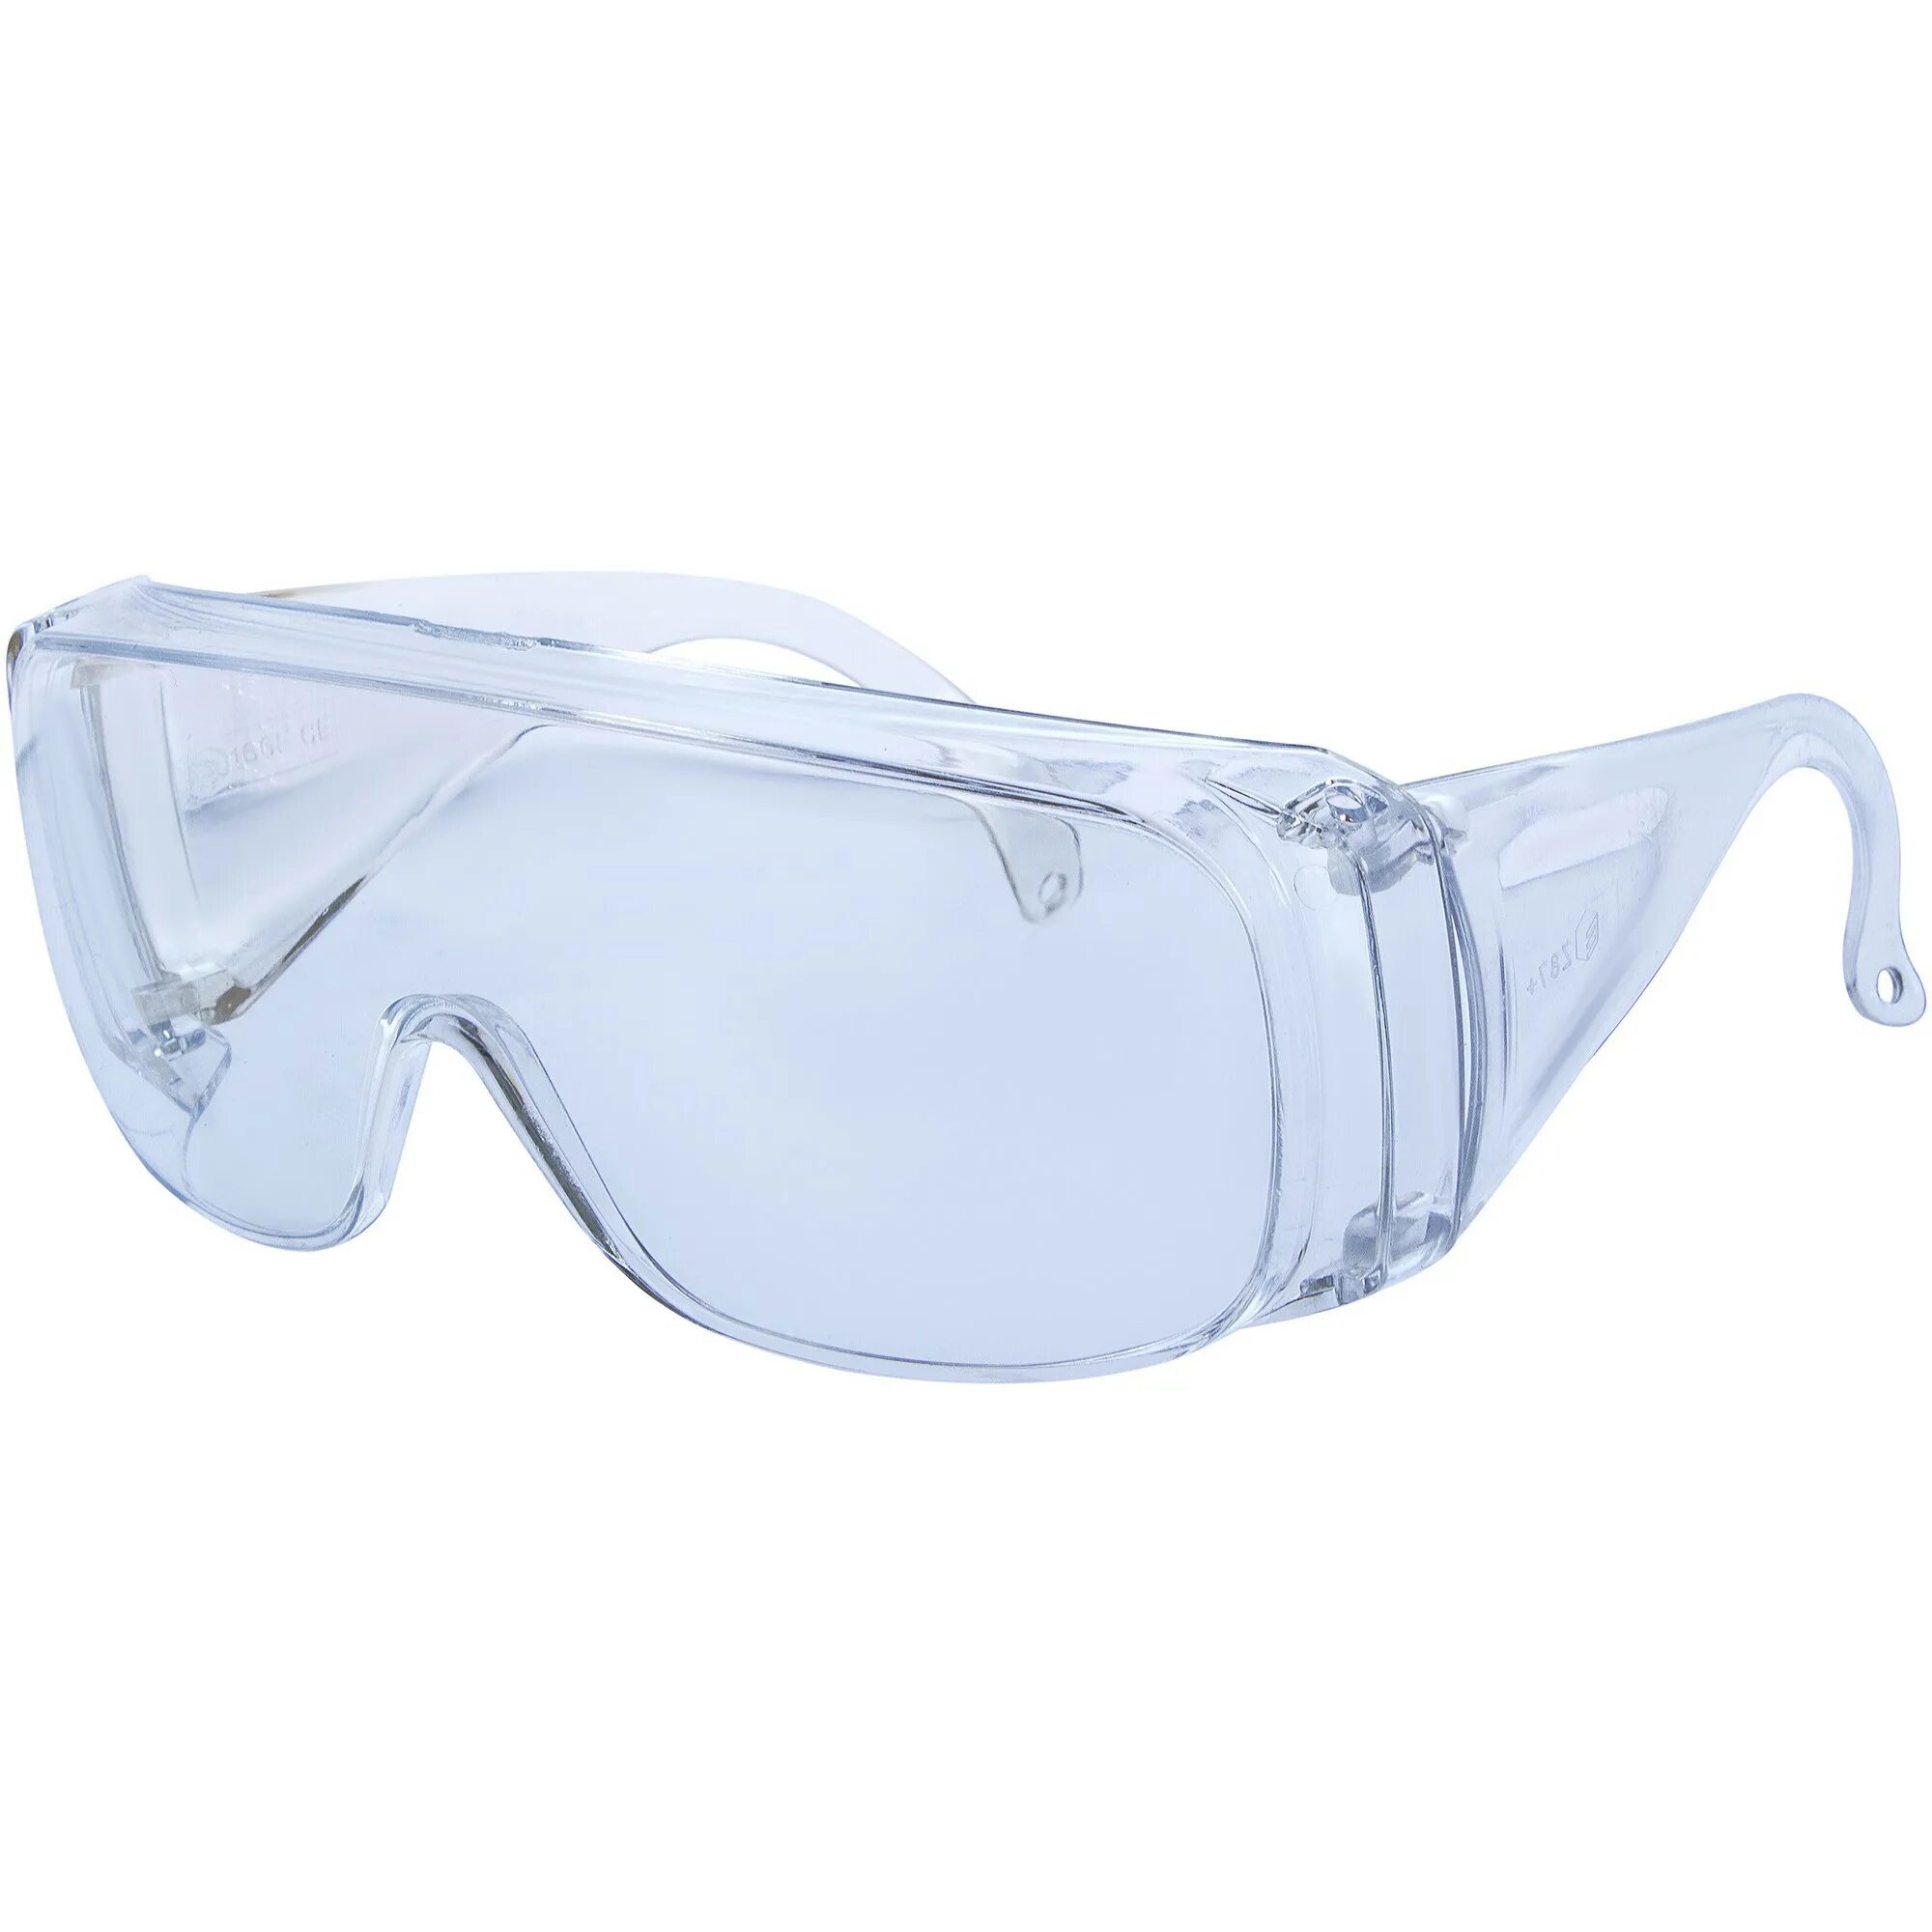 Очки защитные СИБРТЕХ, ударопрочные. Очки открытые СИБРТЕХ 89155. Очк304 (о-13011) очки защитные открытые (прозрачные). Очки защитные очк 304 0-13011.